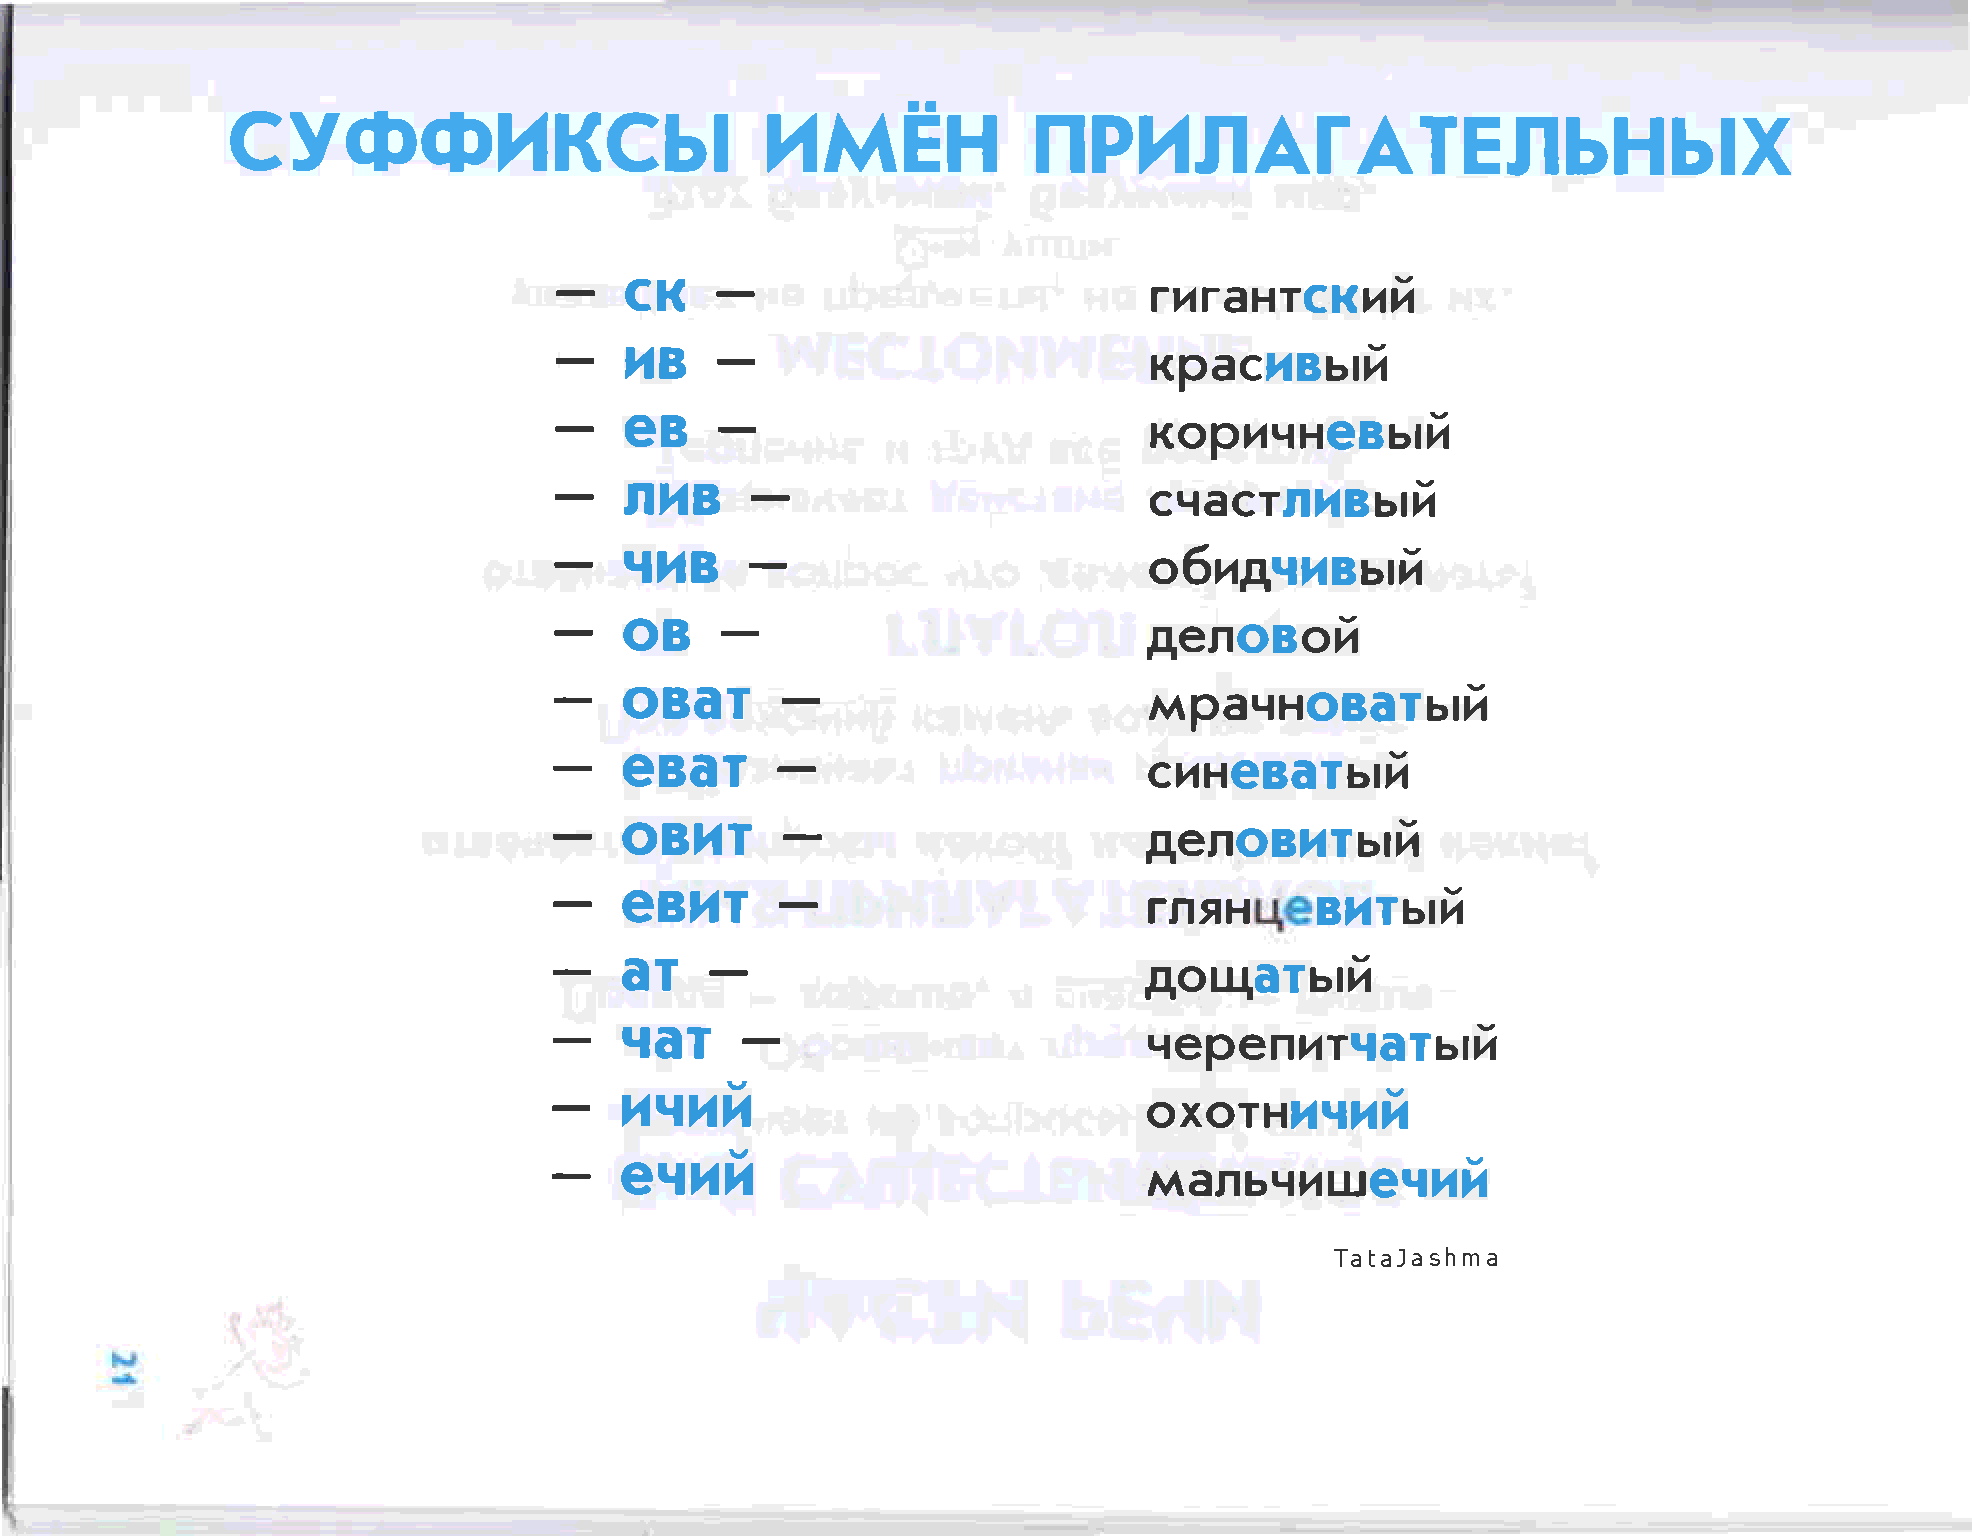 Все суффиксы прилагательных в русском языке